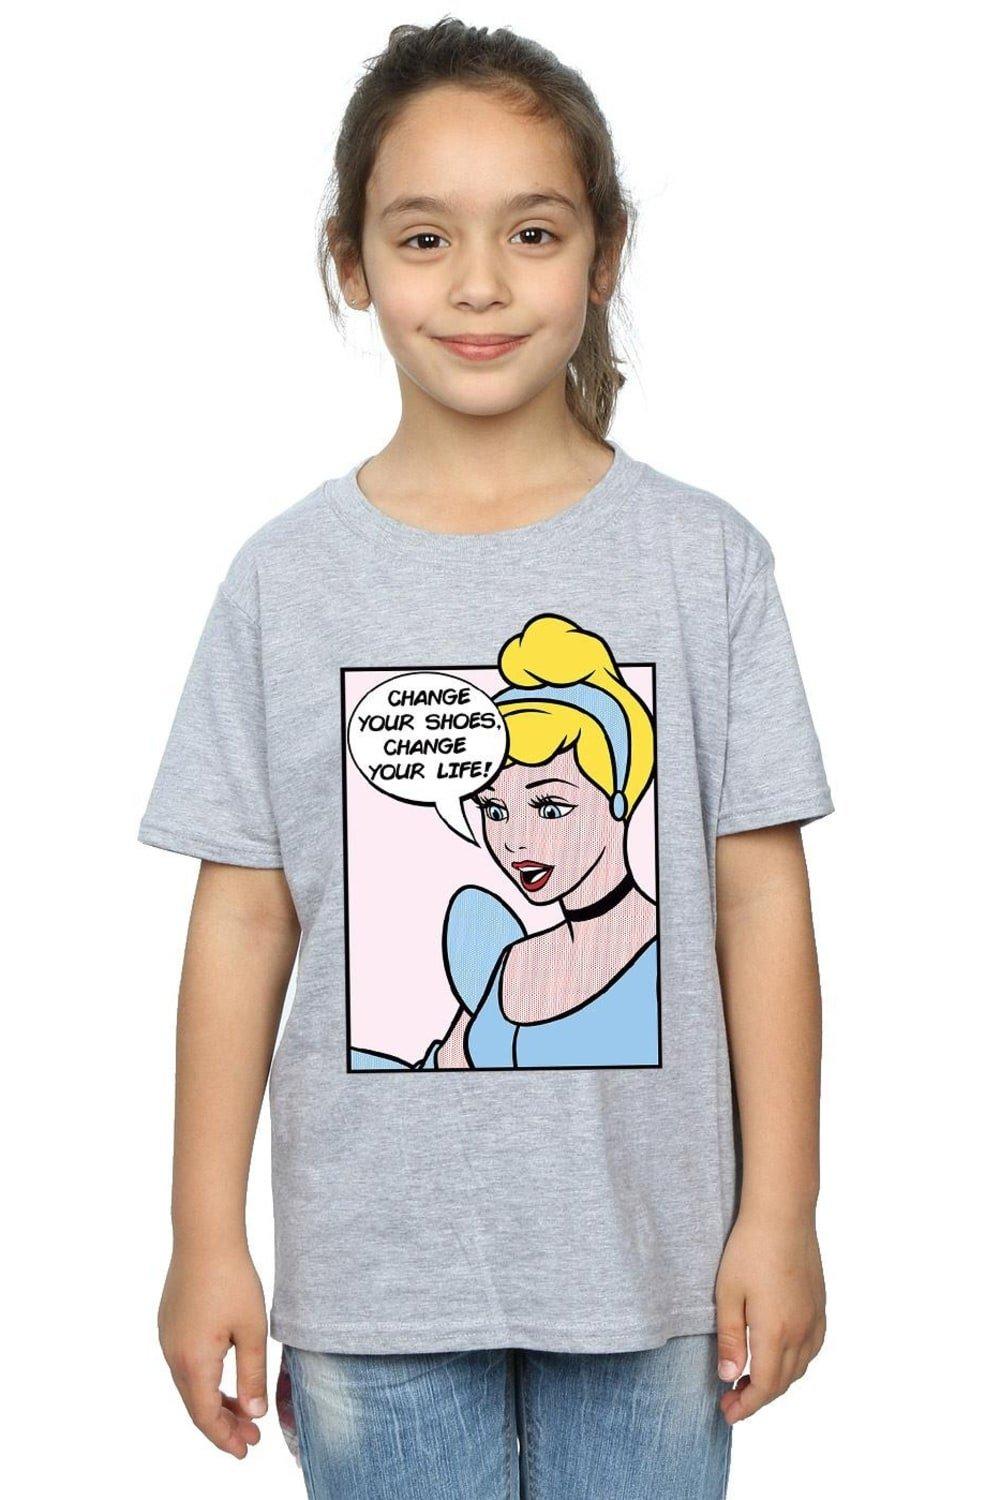 Хлопковая футболка «Золушка» в стиле поп-арт Disney Princess, серый